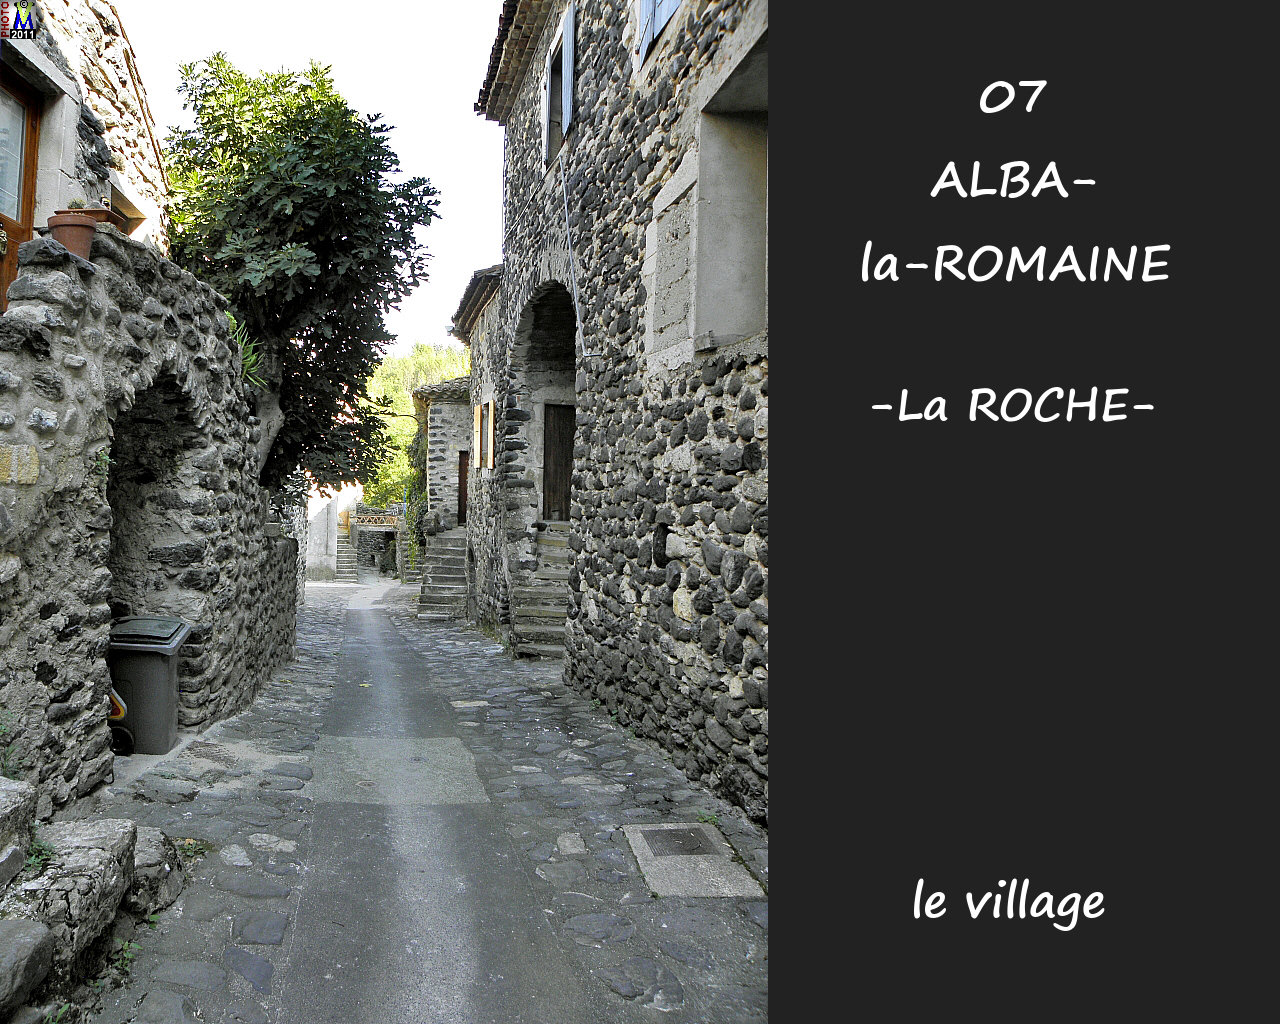 07ALBA-ROMAINEzROCHE_village_134.jpg